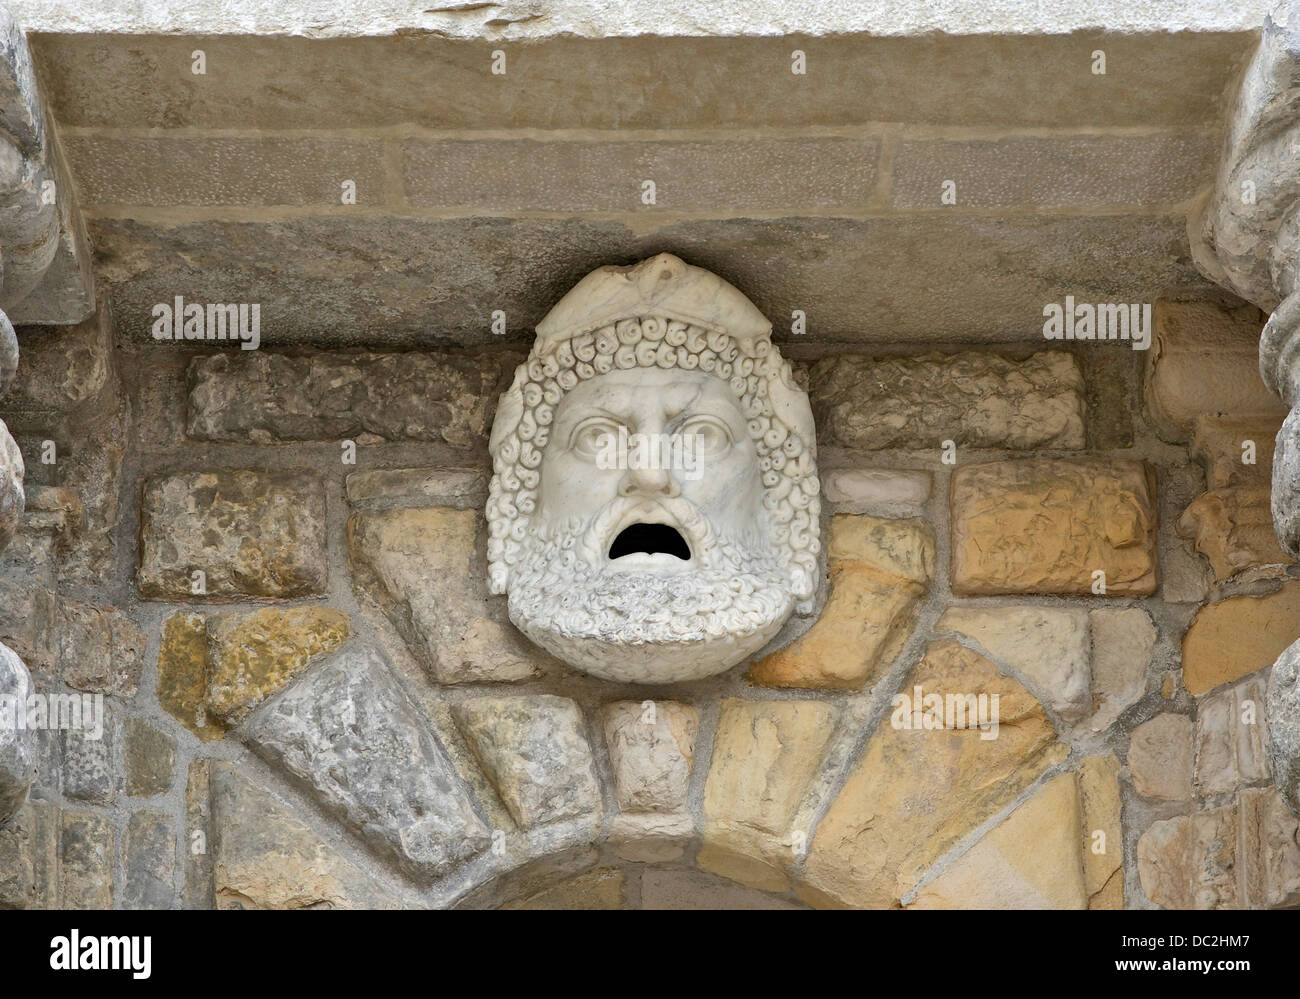 Masque d'un homme dans l'ancien style néogrec, porte du Baptistère, château de Fontainebleau, Seine-et-Marne, France. Banque D'Images